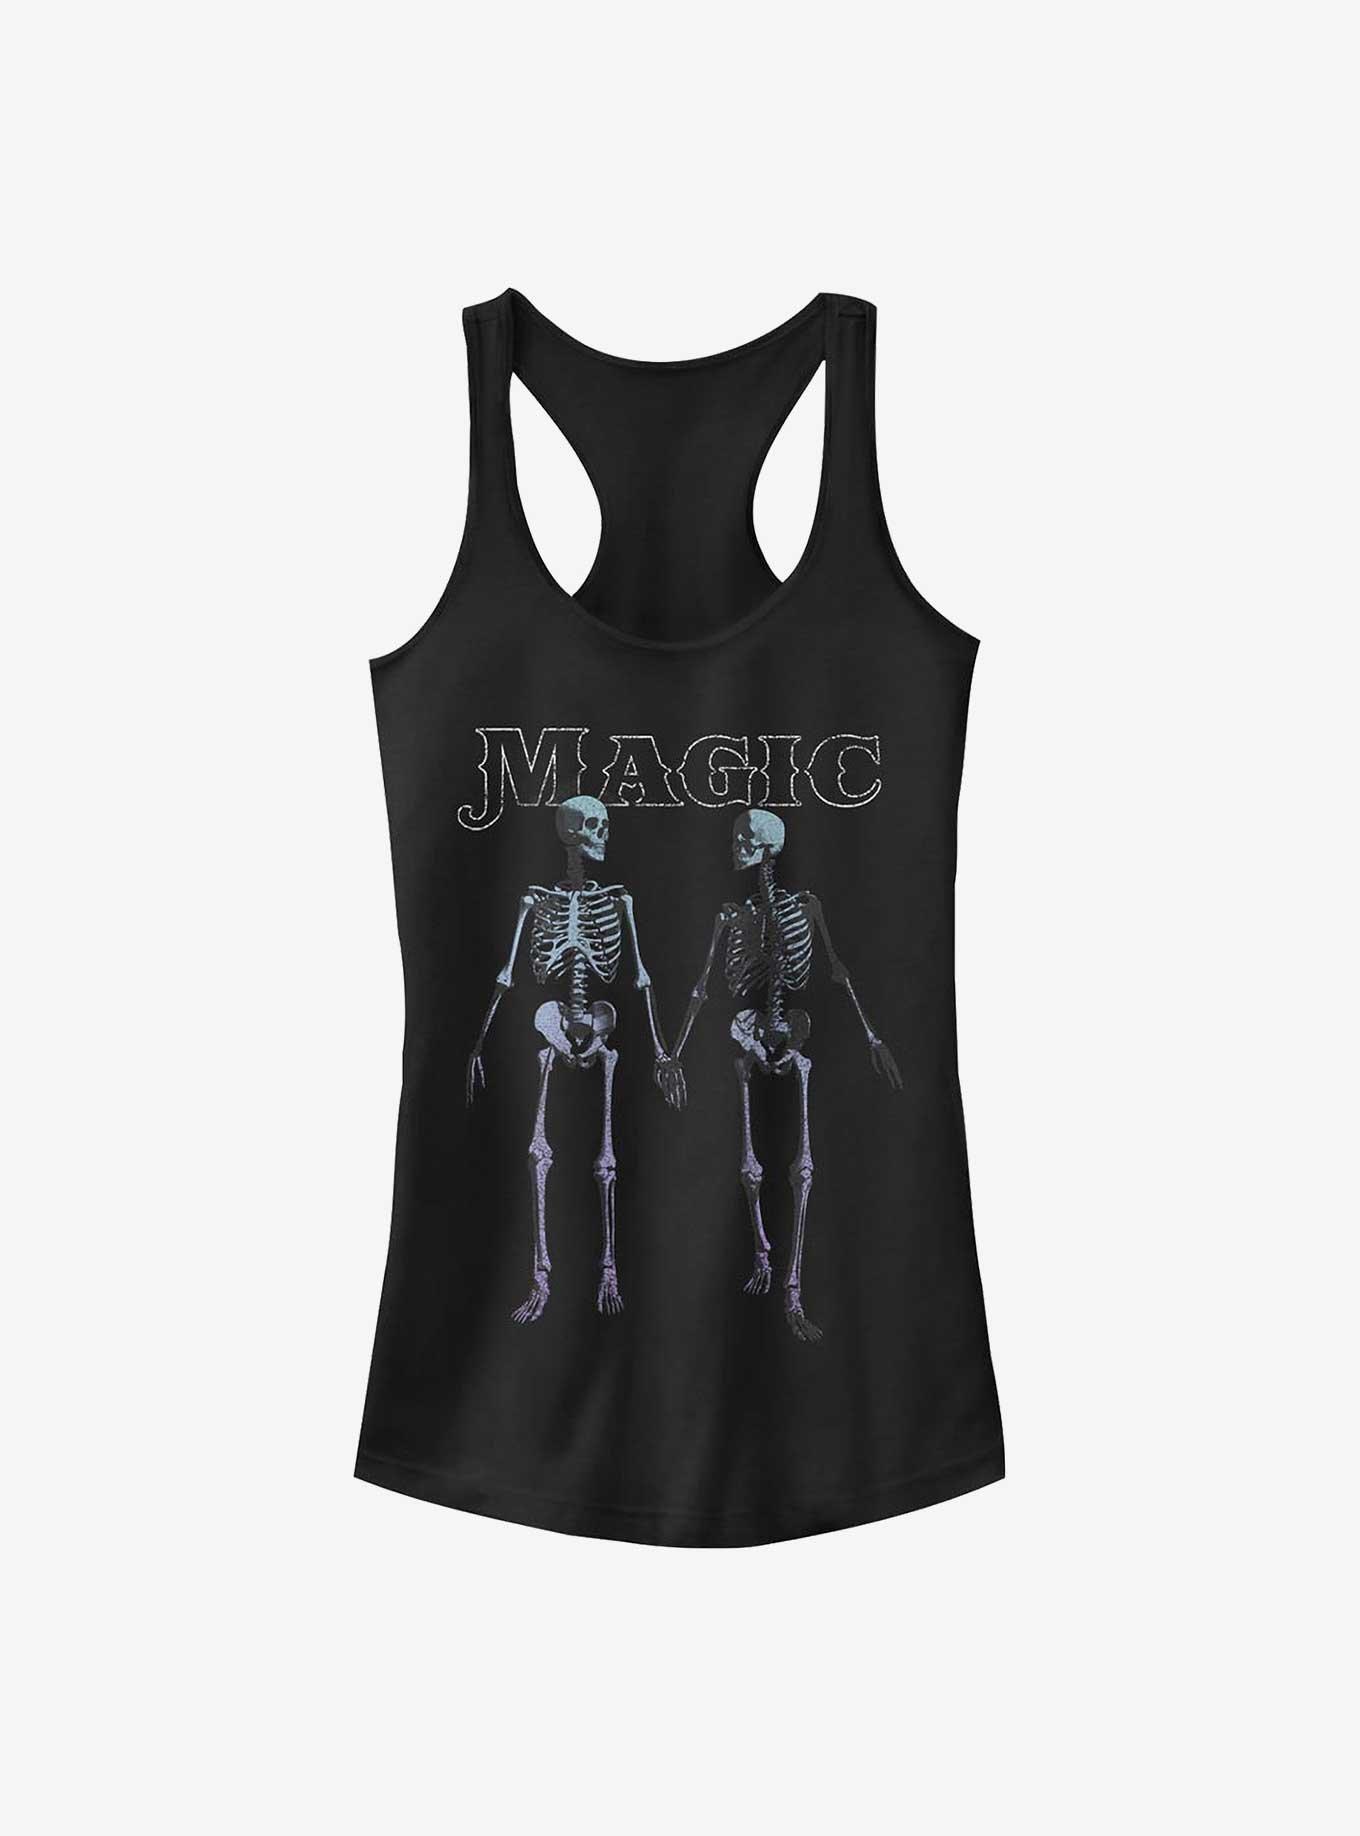 Skeleton Magic Girls Tank